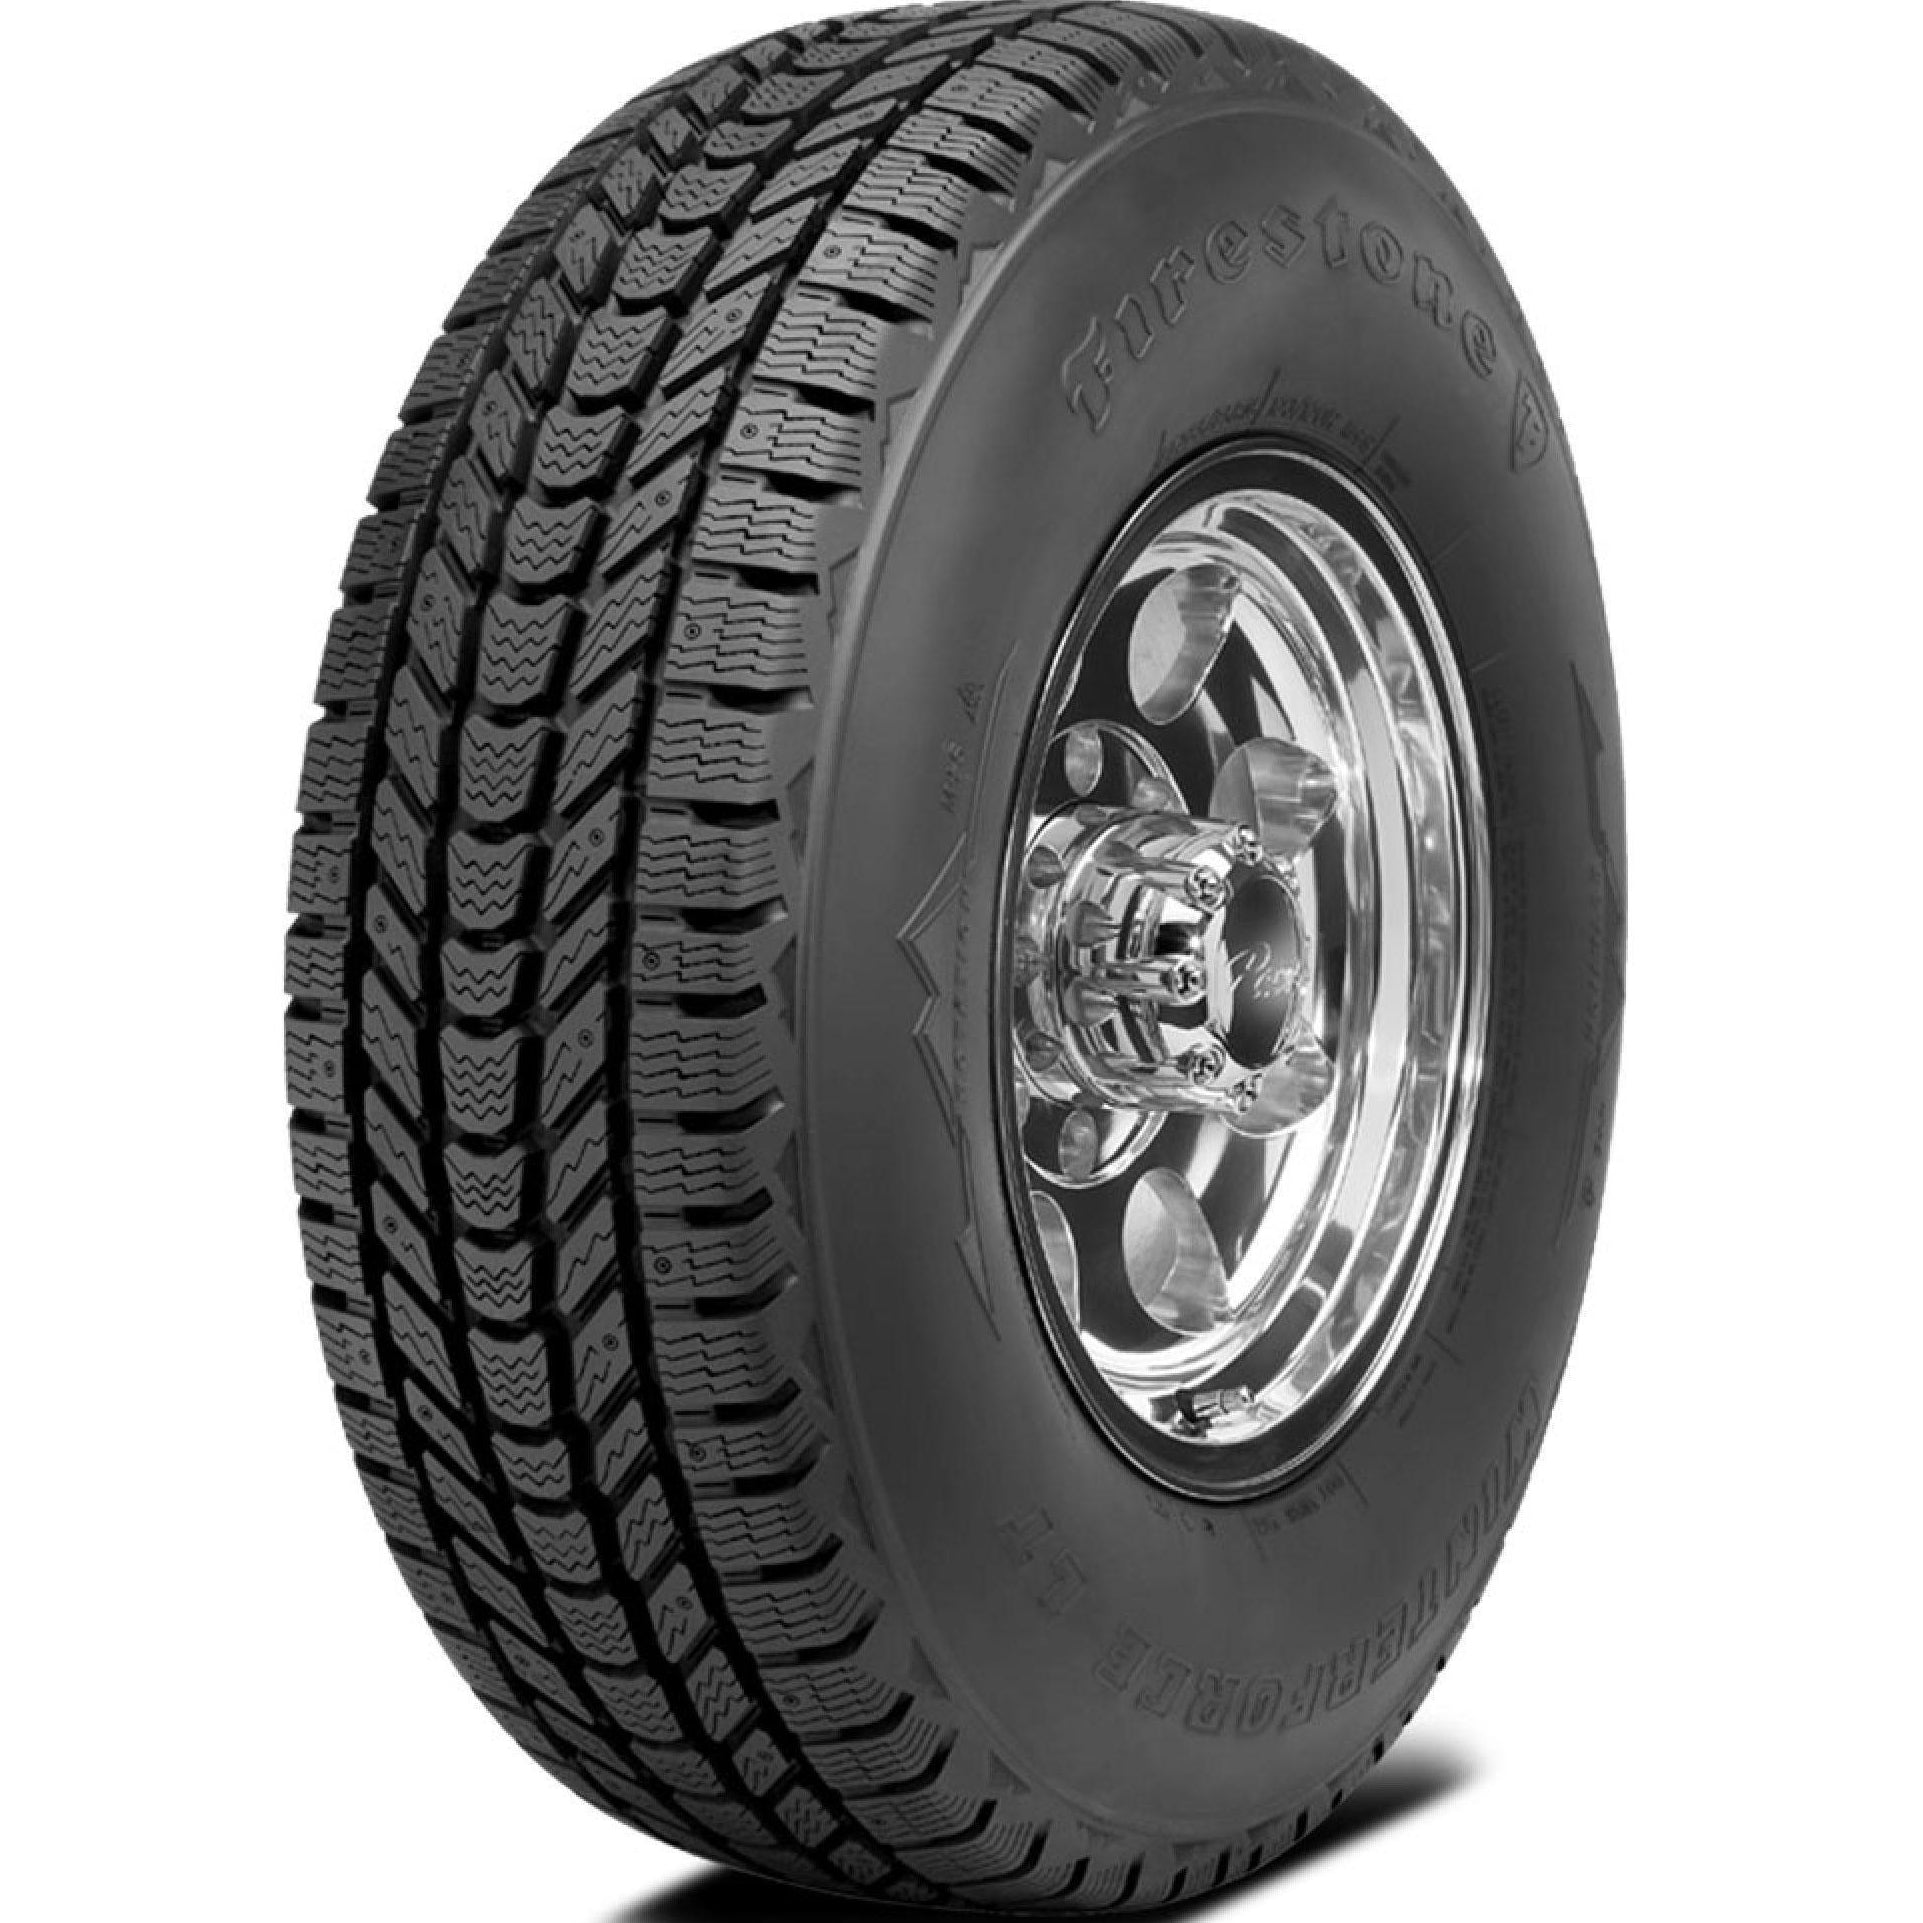 FIRESTONE WINTERFORCE LT LT245/75R17 (31.5X9.7R 17) Tires